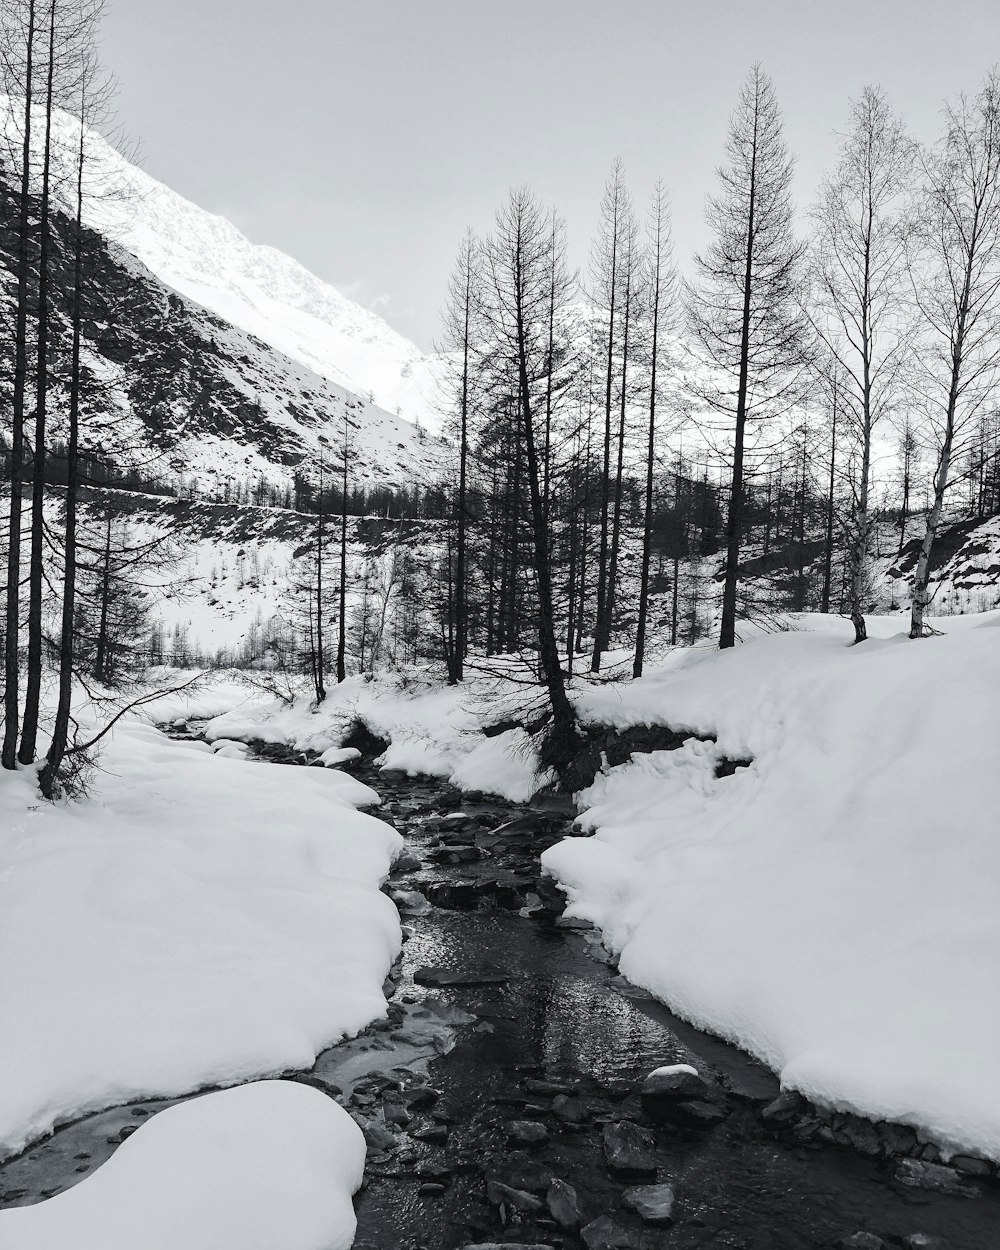 fotografia in scala di grigi del fiume e degli alberi coperti dalla neve bianca